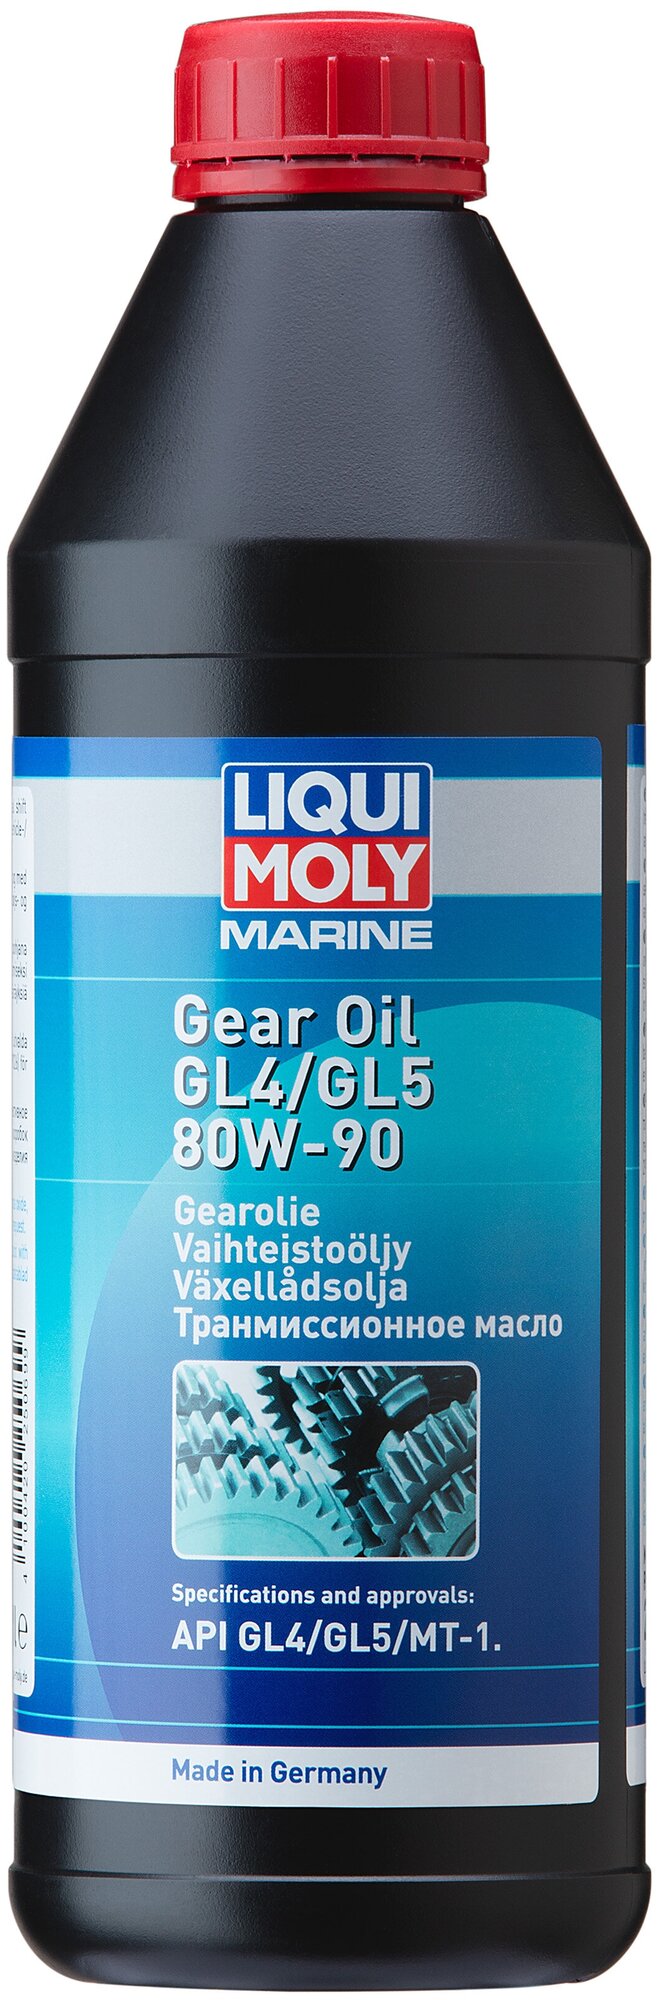 Масло трансмиссионное LIQUI MOLY Marine Gear Oil 80W-90